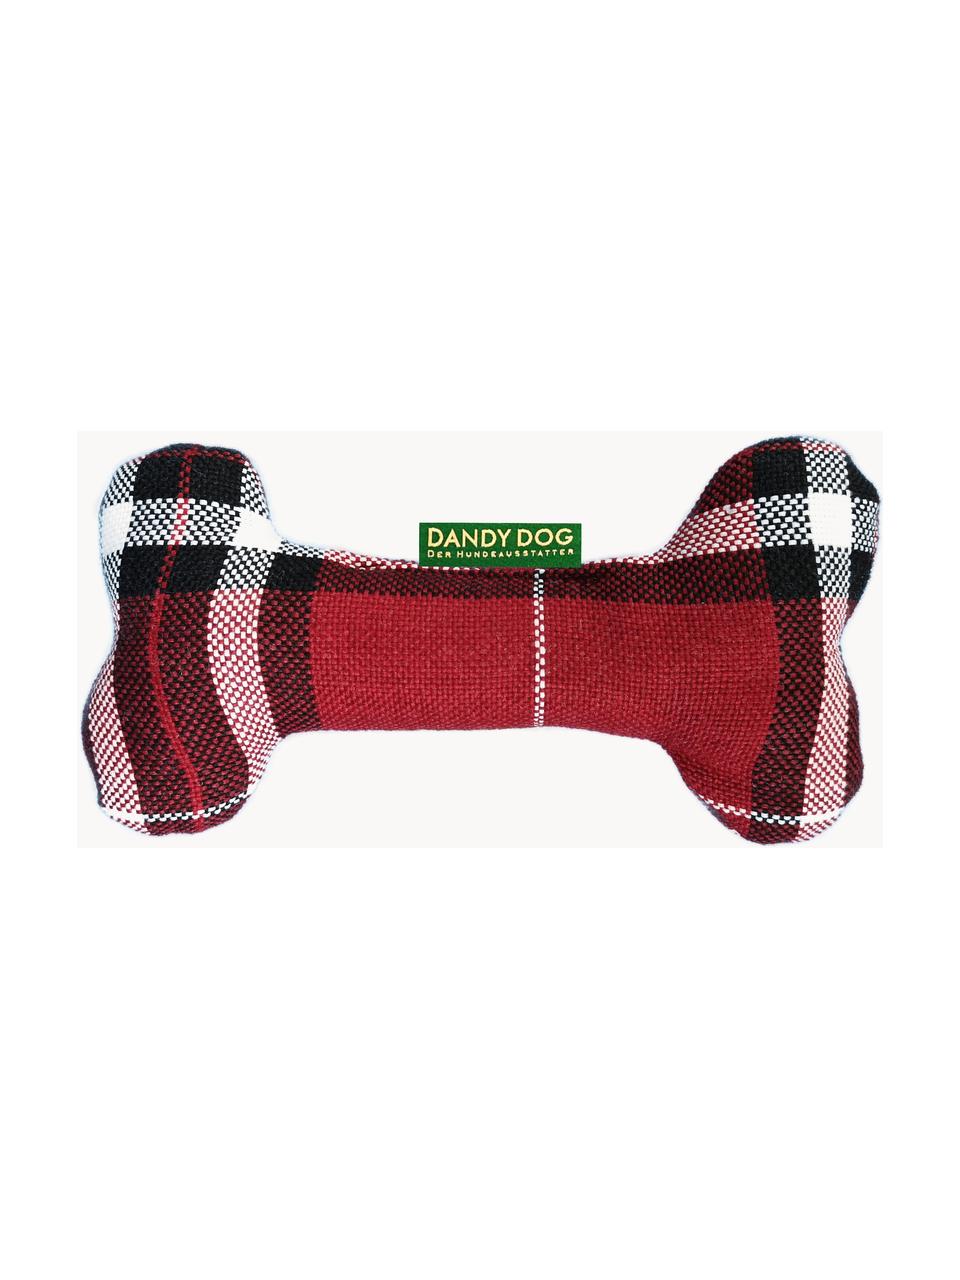 Zabawka dla psa Highlands, różne rozmiary, Tapicerka: 100% poliester Dzięki tka, Czerwony, czarny, biały, S 25 x W 14 cm